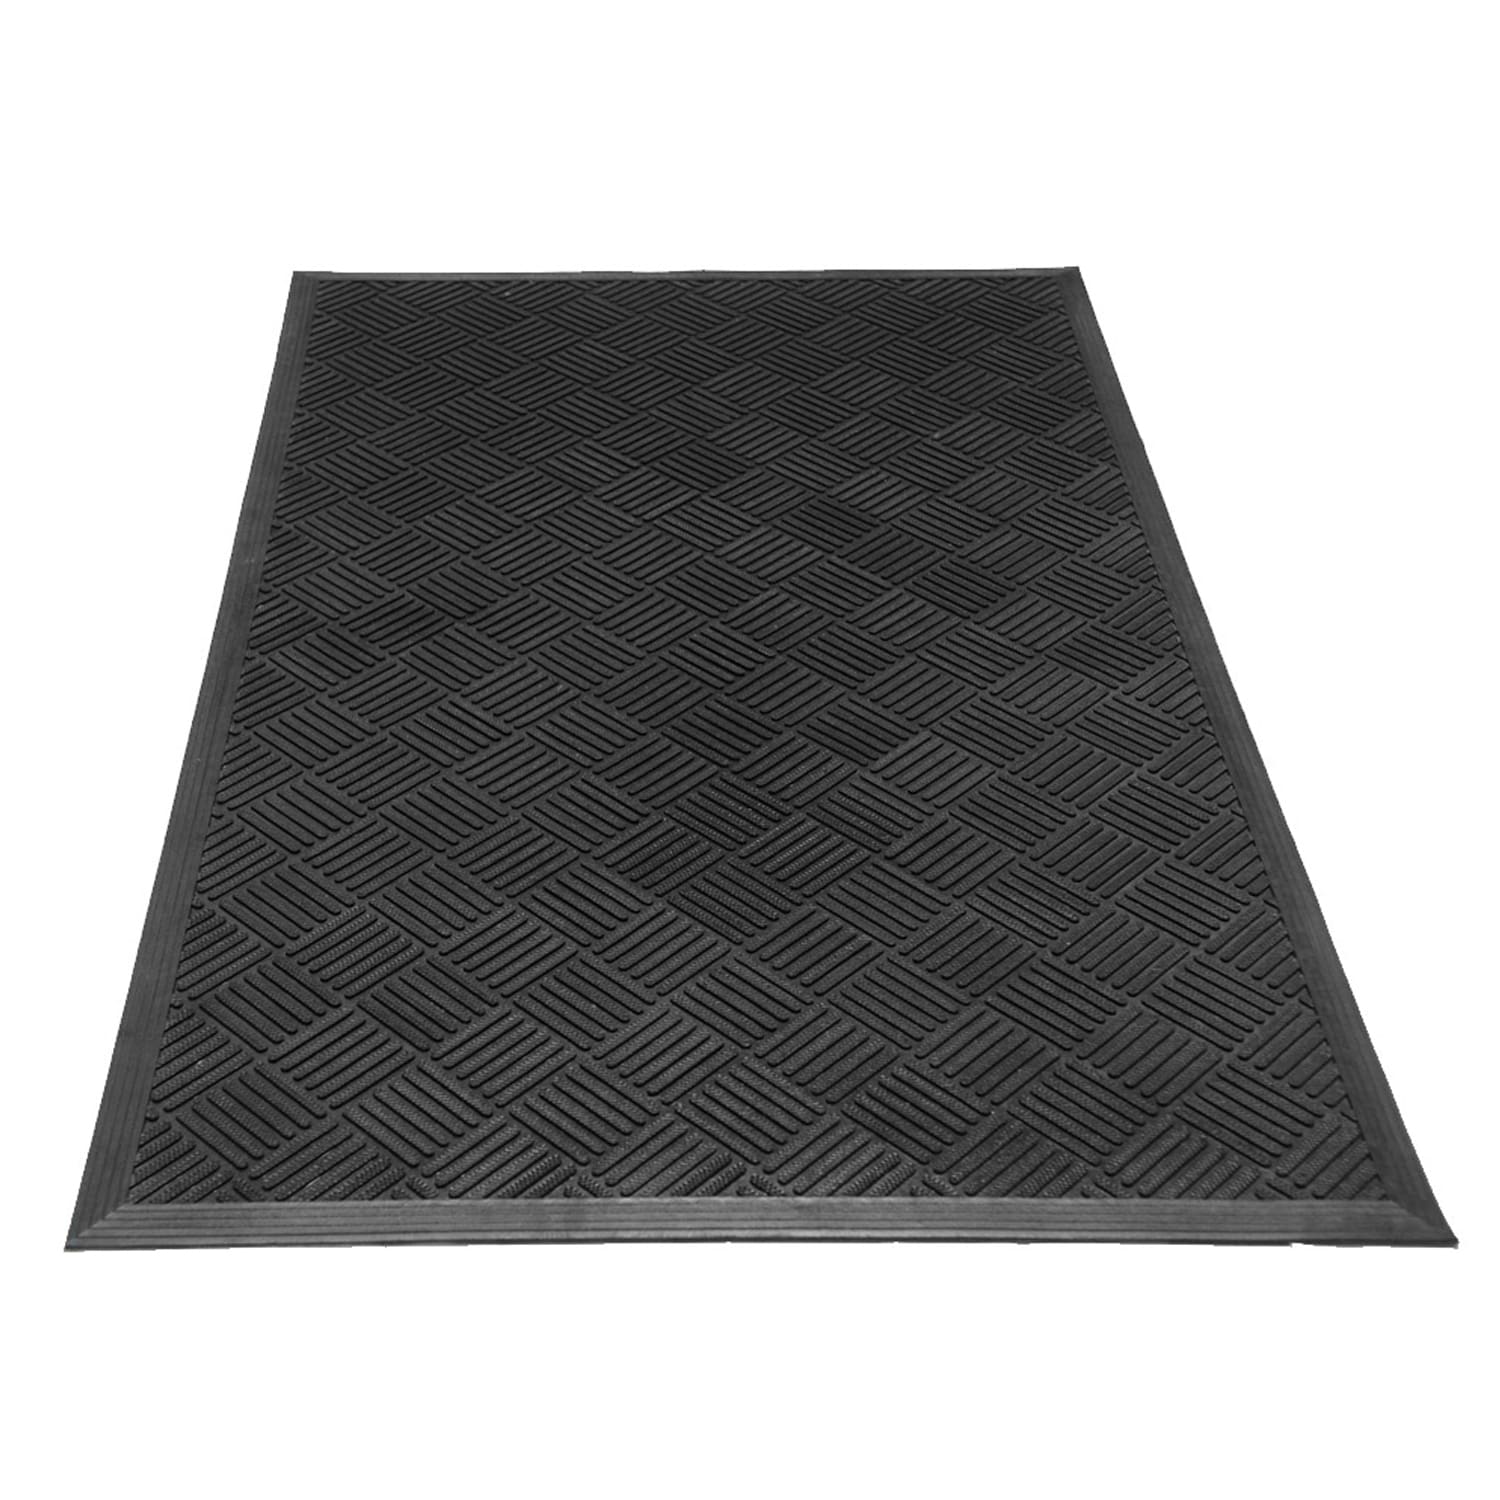 3 X 5 Ft Commercial Indoor Outdoor Entrance Floor Mat Rug Rubber No Slip  Black